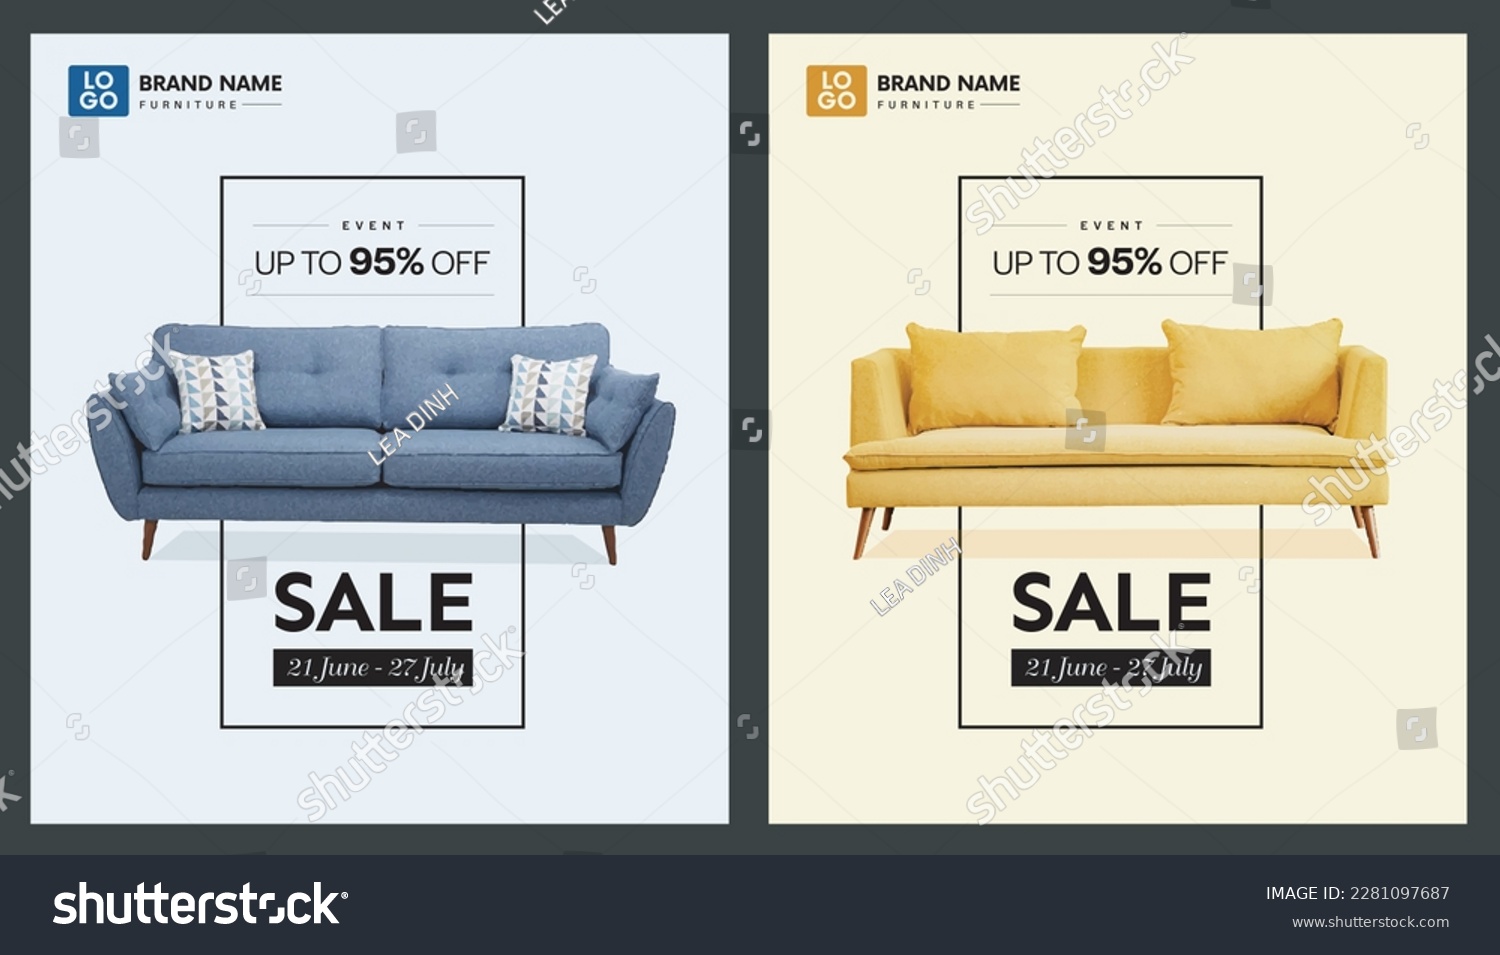 2 Banner Furniture Sale Design Template Vector Illustration #2281097687